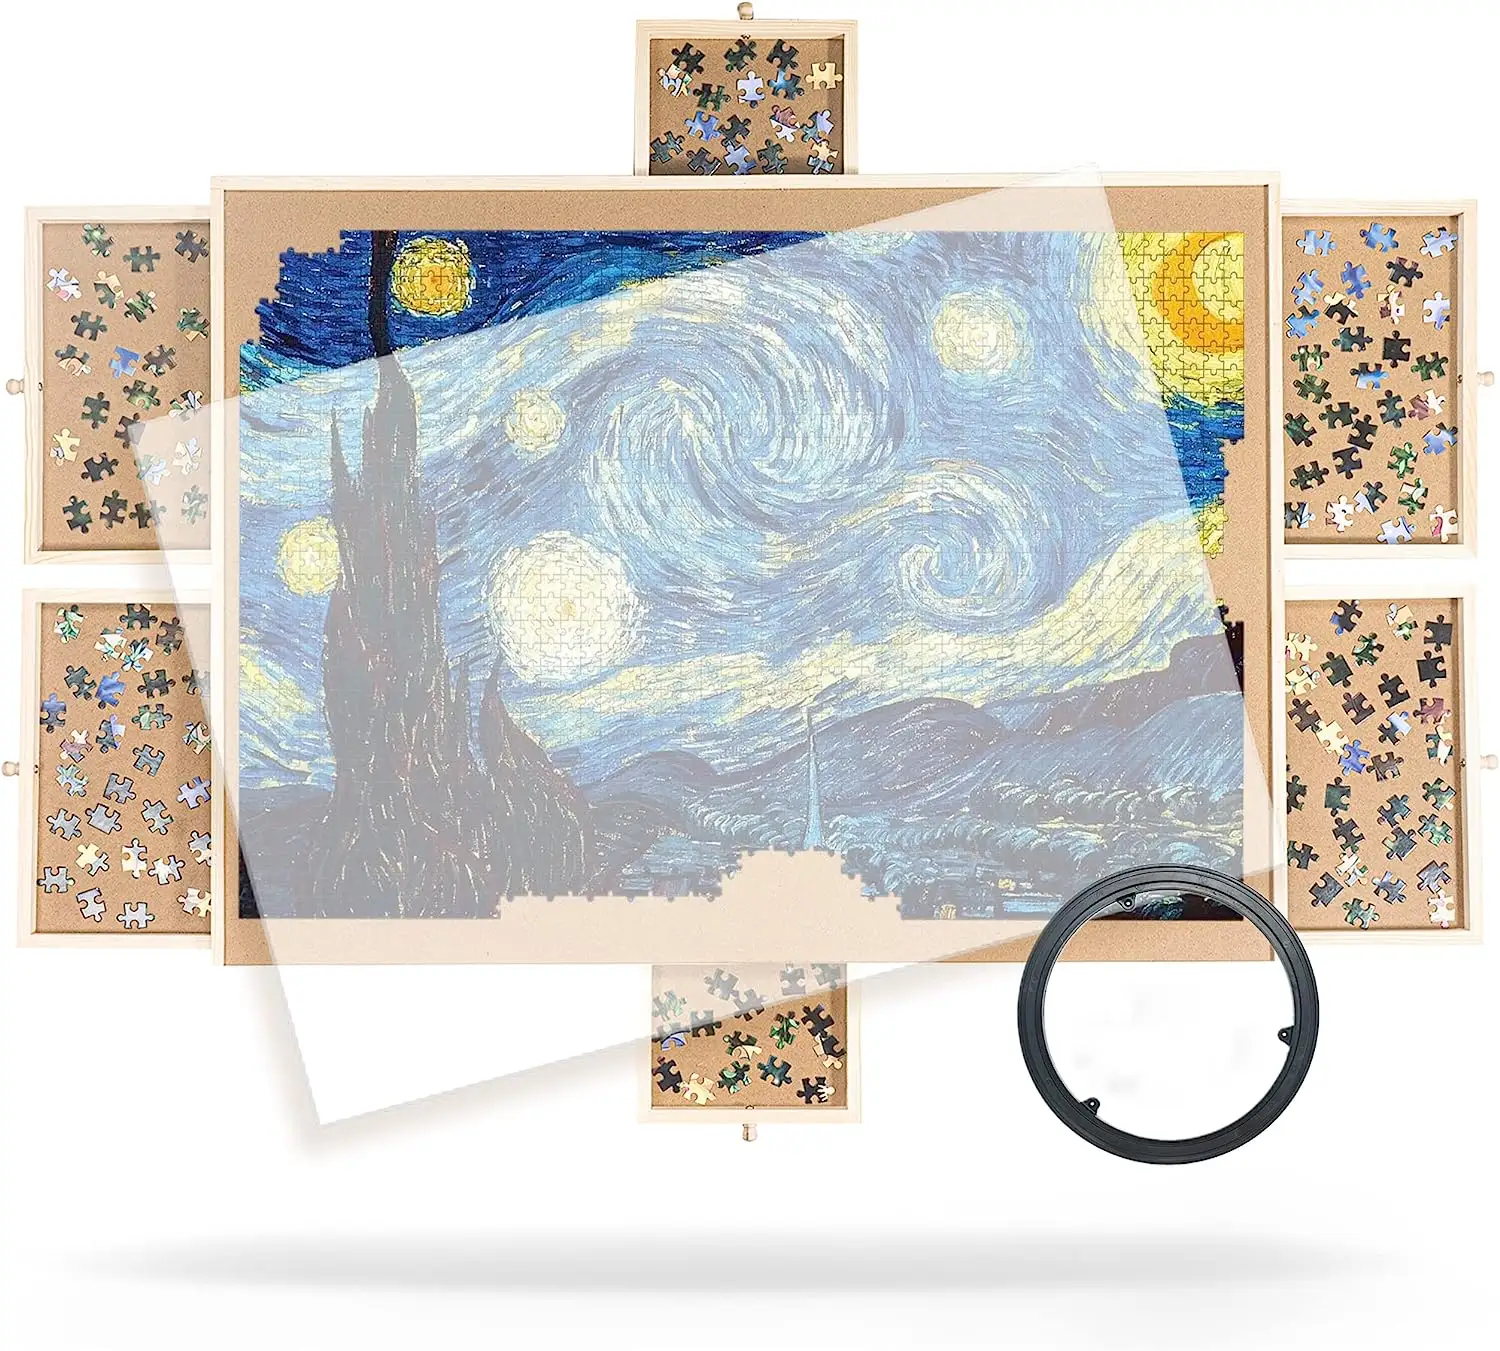 Tragbares Puzzle-Brett mit Zeichnung 1500 Stück Holz puzzle Falt puzzle